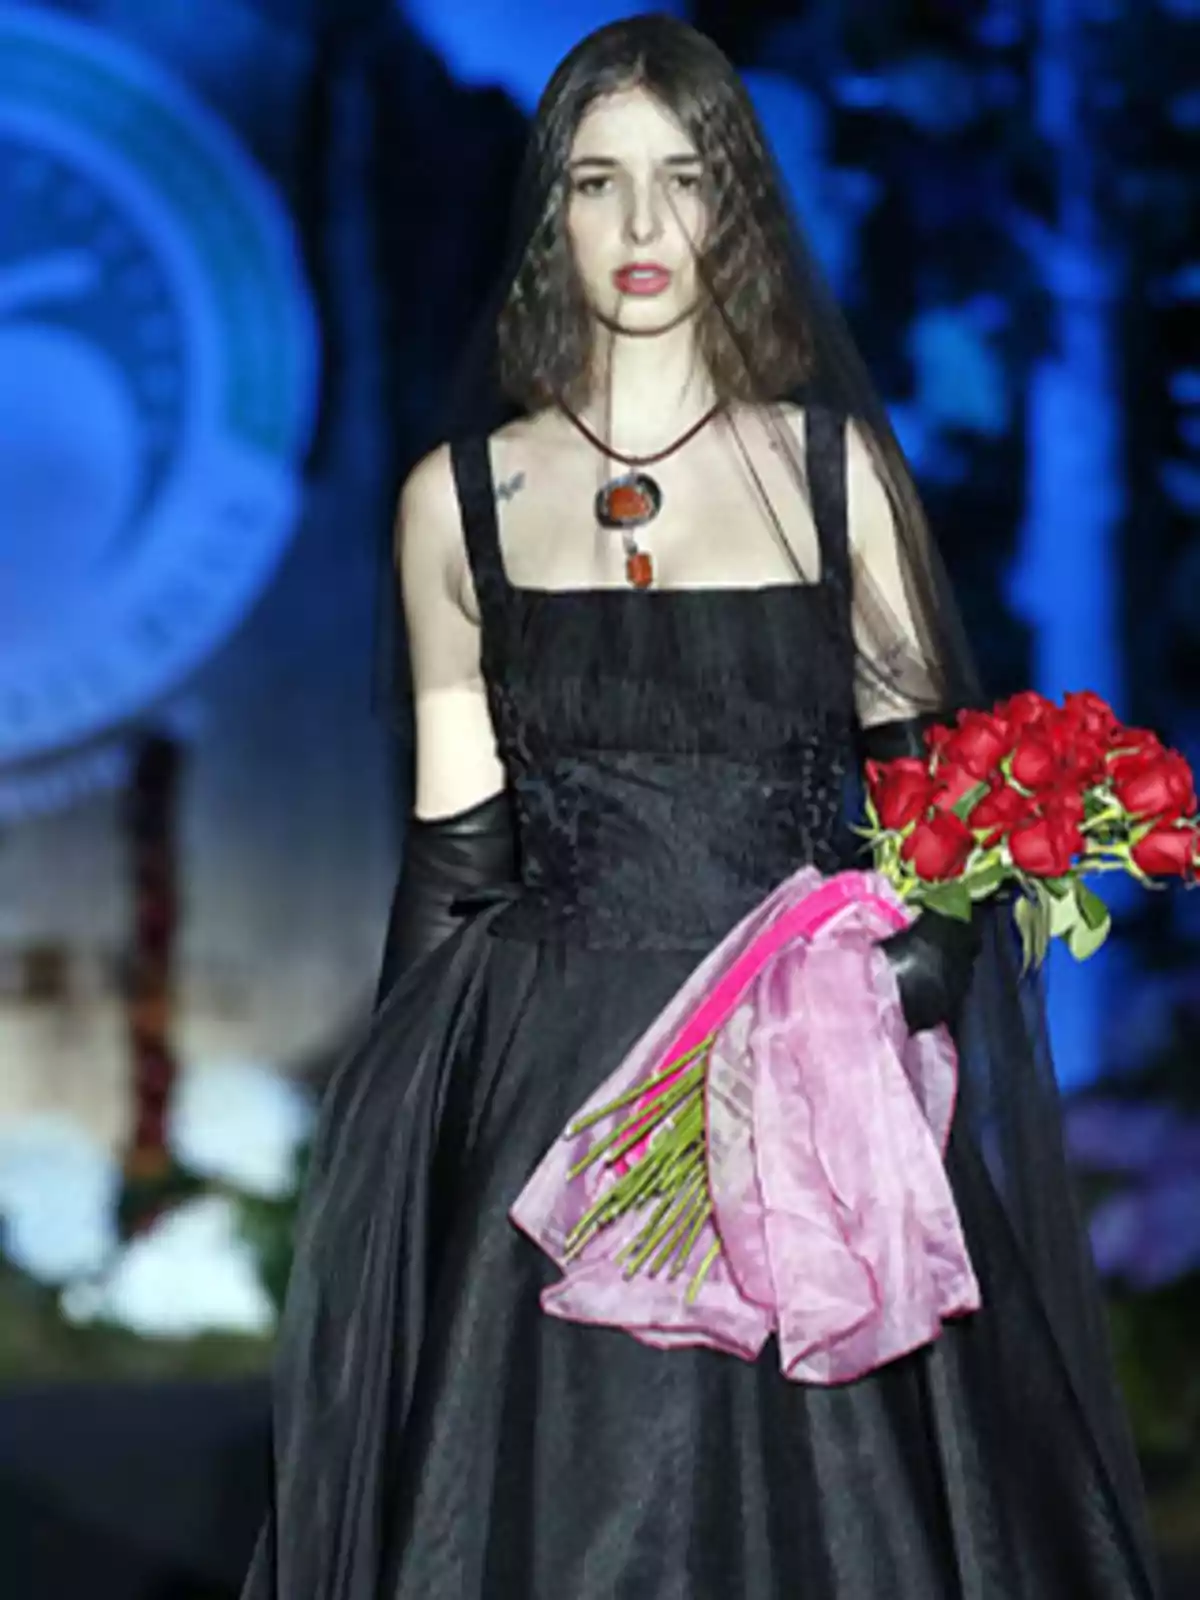 Una modelo desfila con un vestido negro, guantes largos y un collar, sosteniendo un ramo de rosas rojas envueltas en una tela rosa.